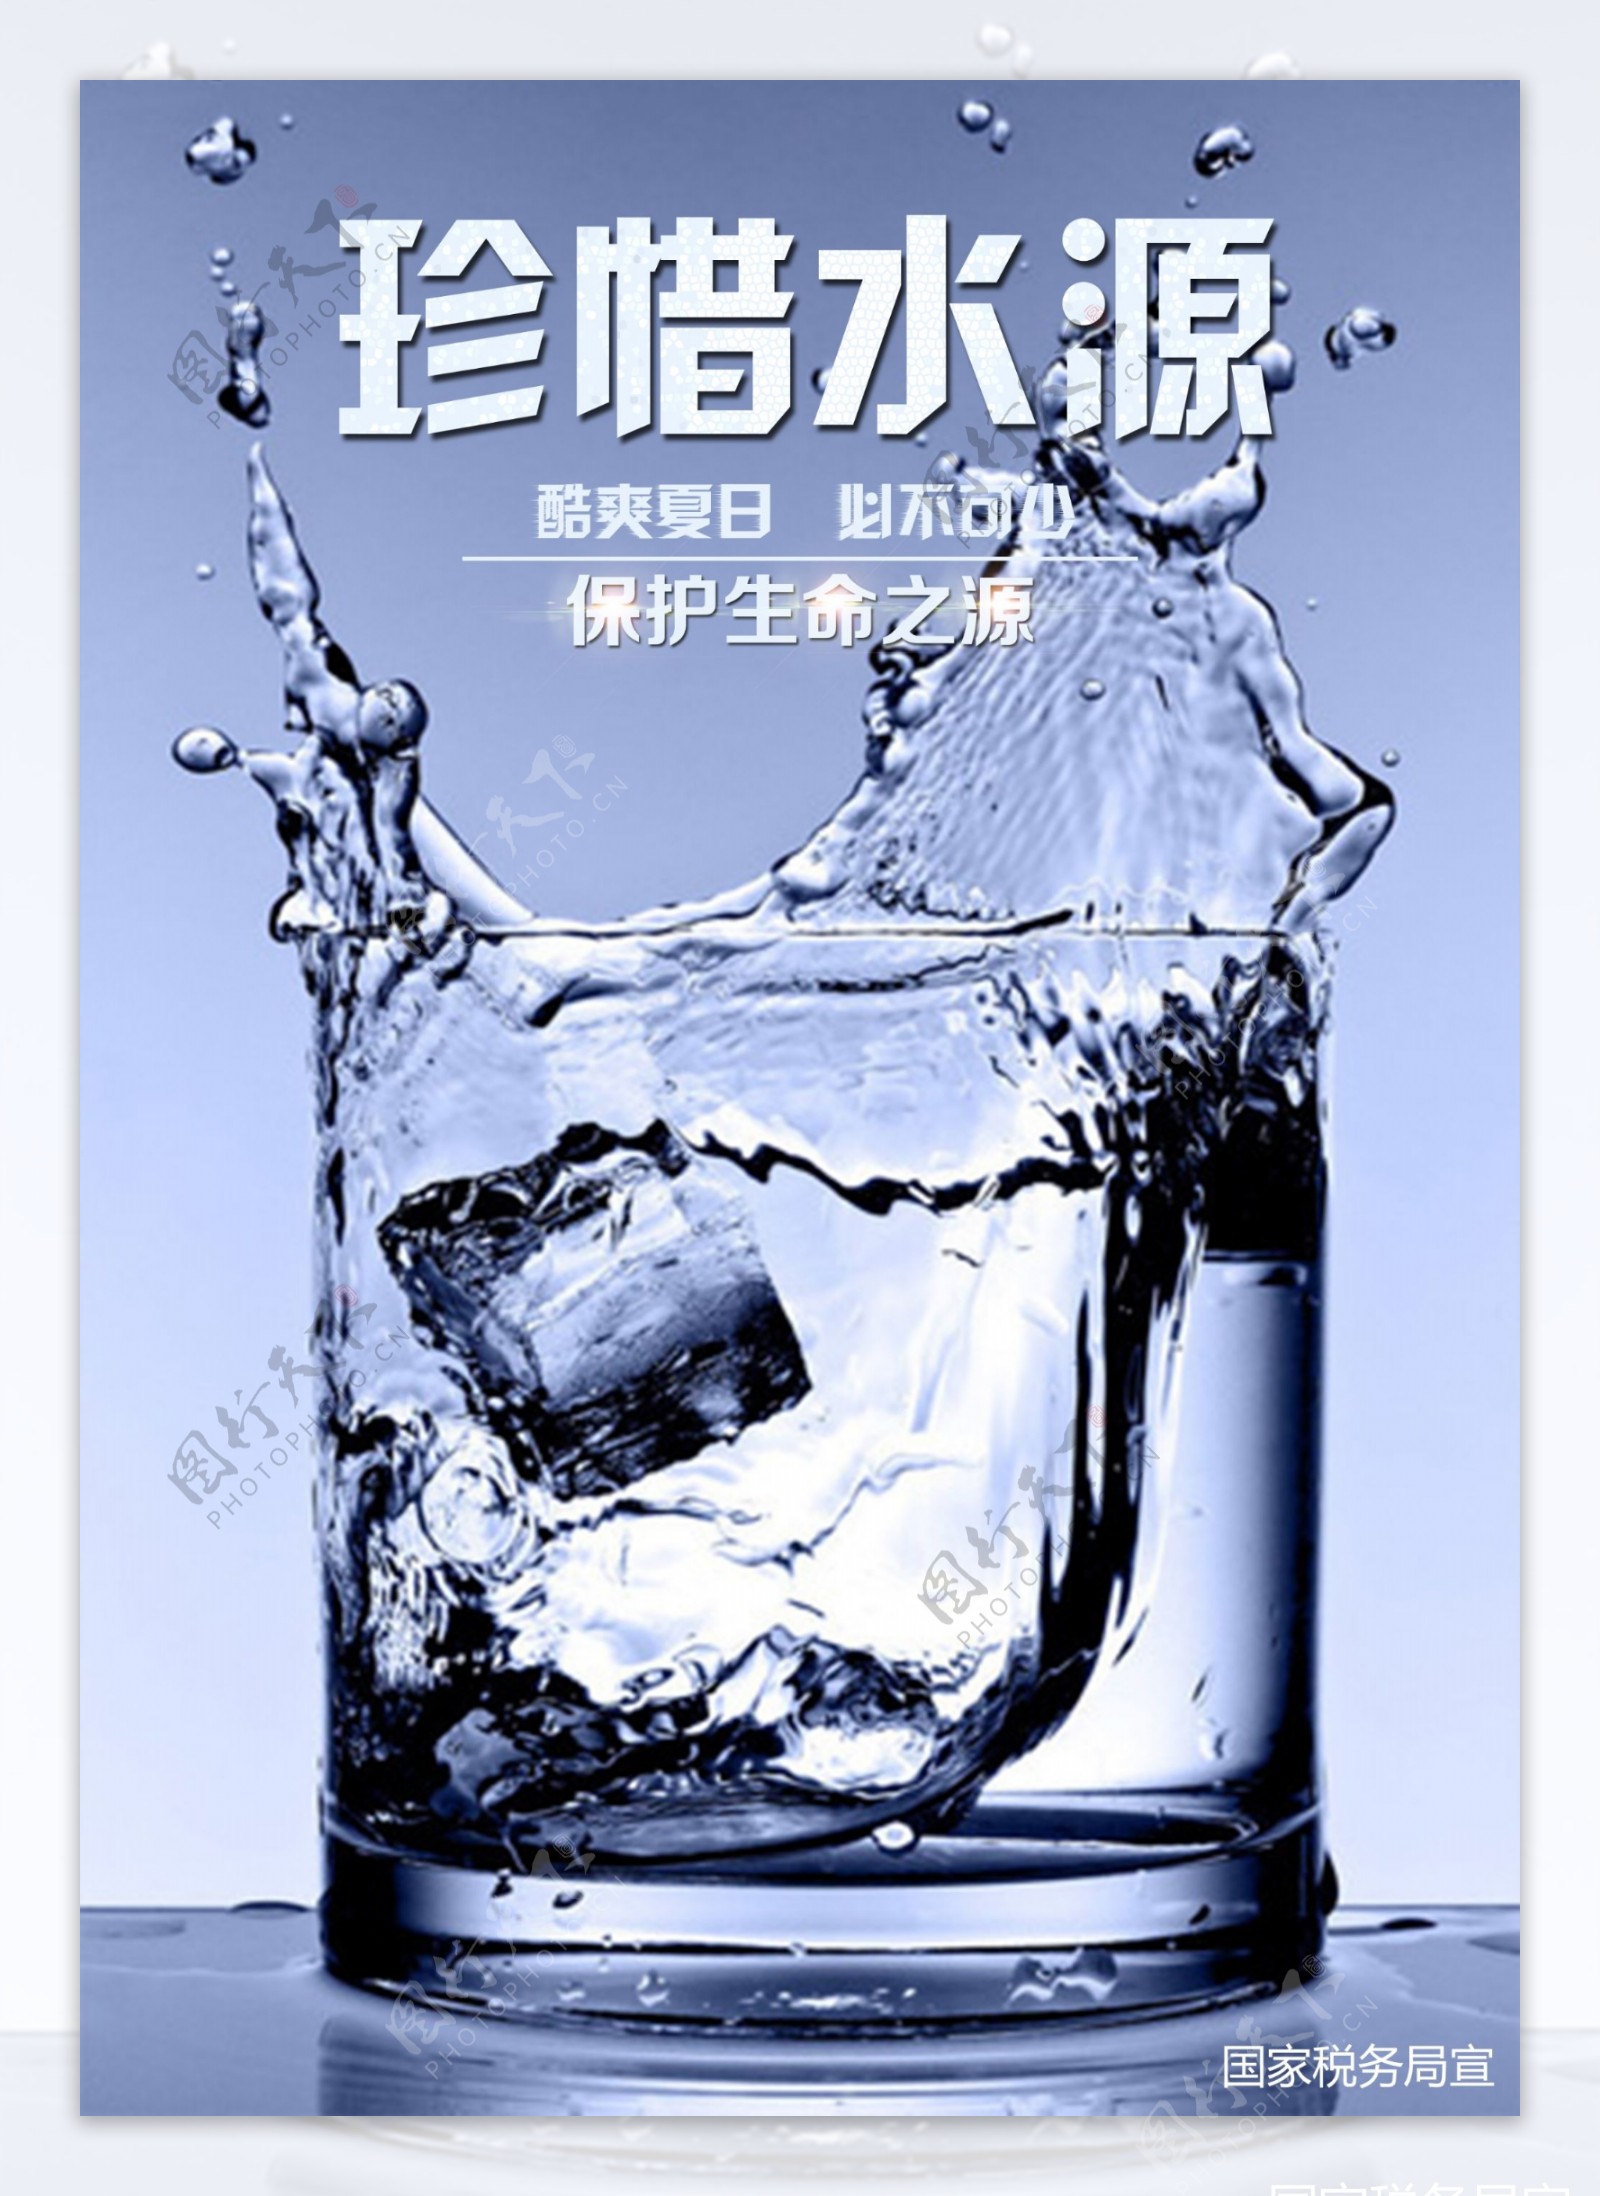 爱护水资源宣传海报